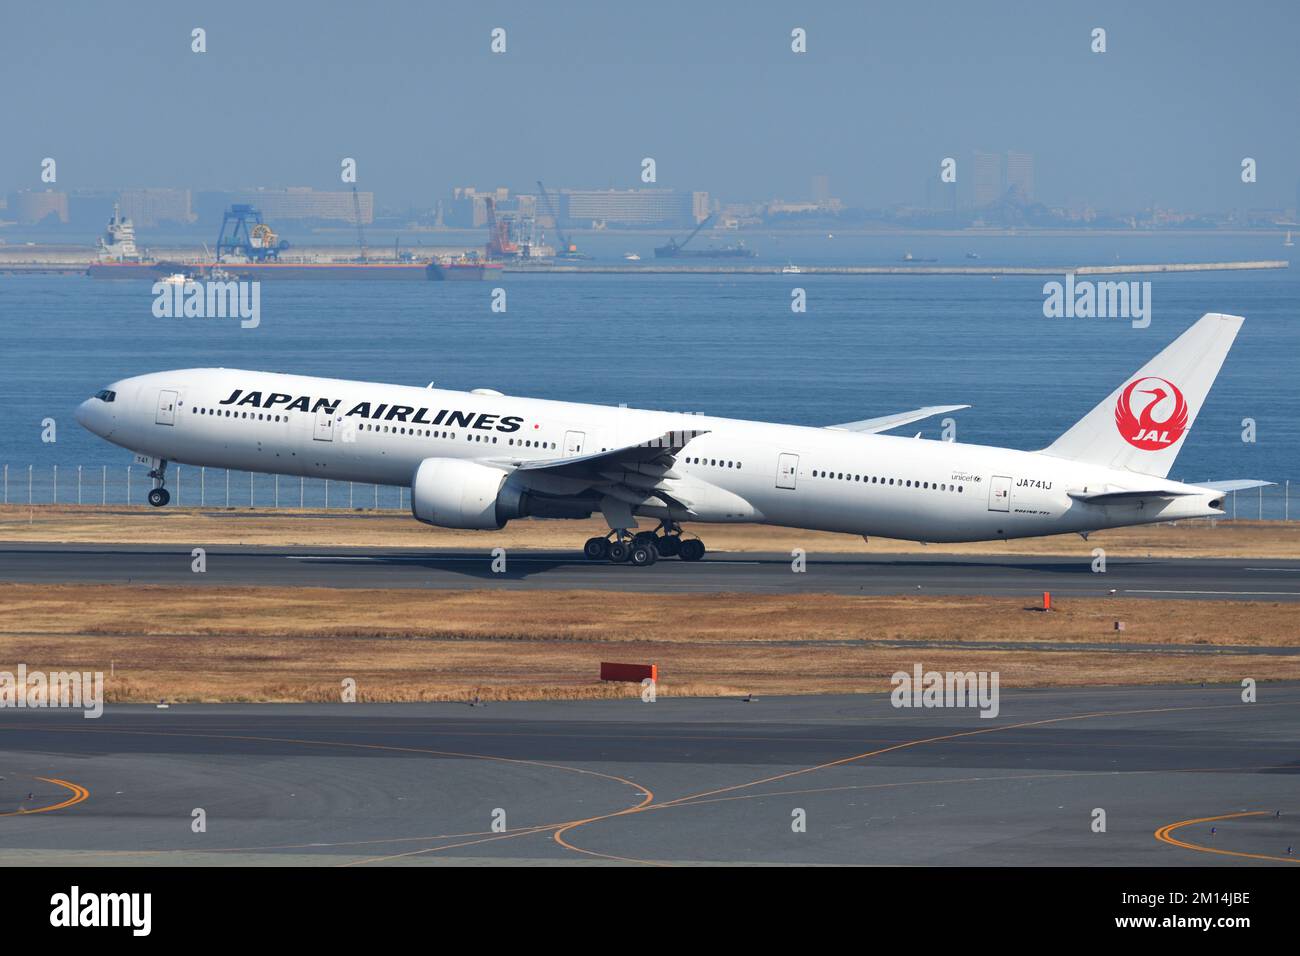 Tokyo, Japan - January 12, 2020: Japan Airlines (JAL) Boeing B777-300ER (JA741J) passenger plane. Stock Photo